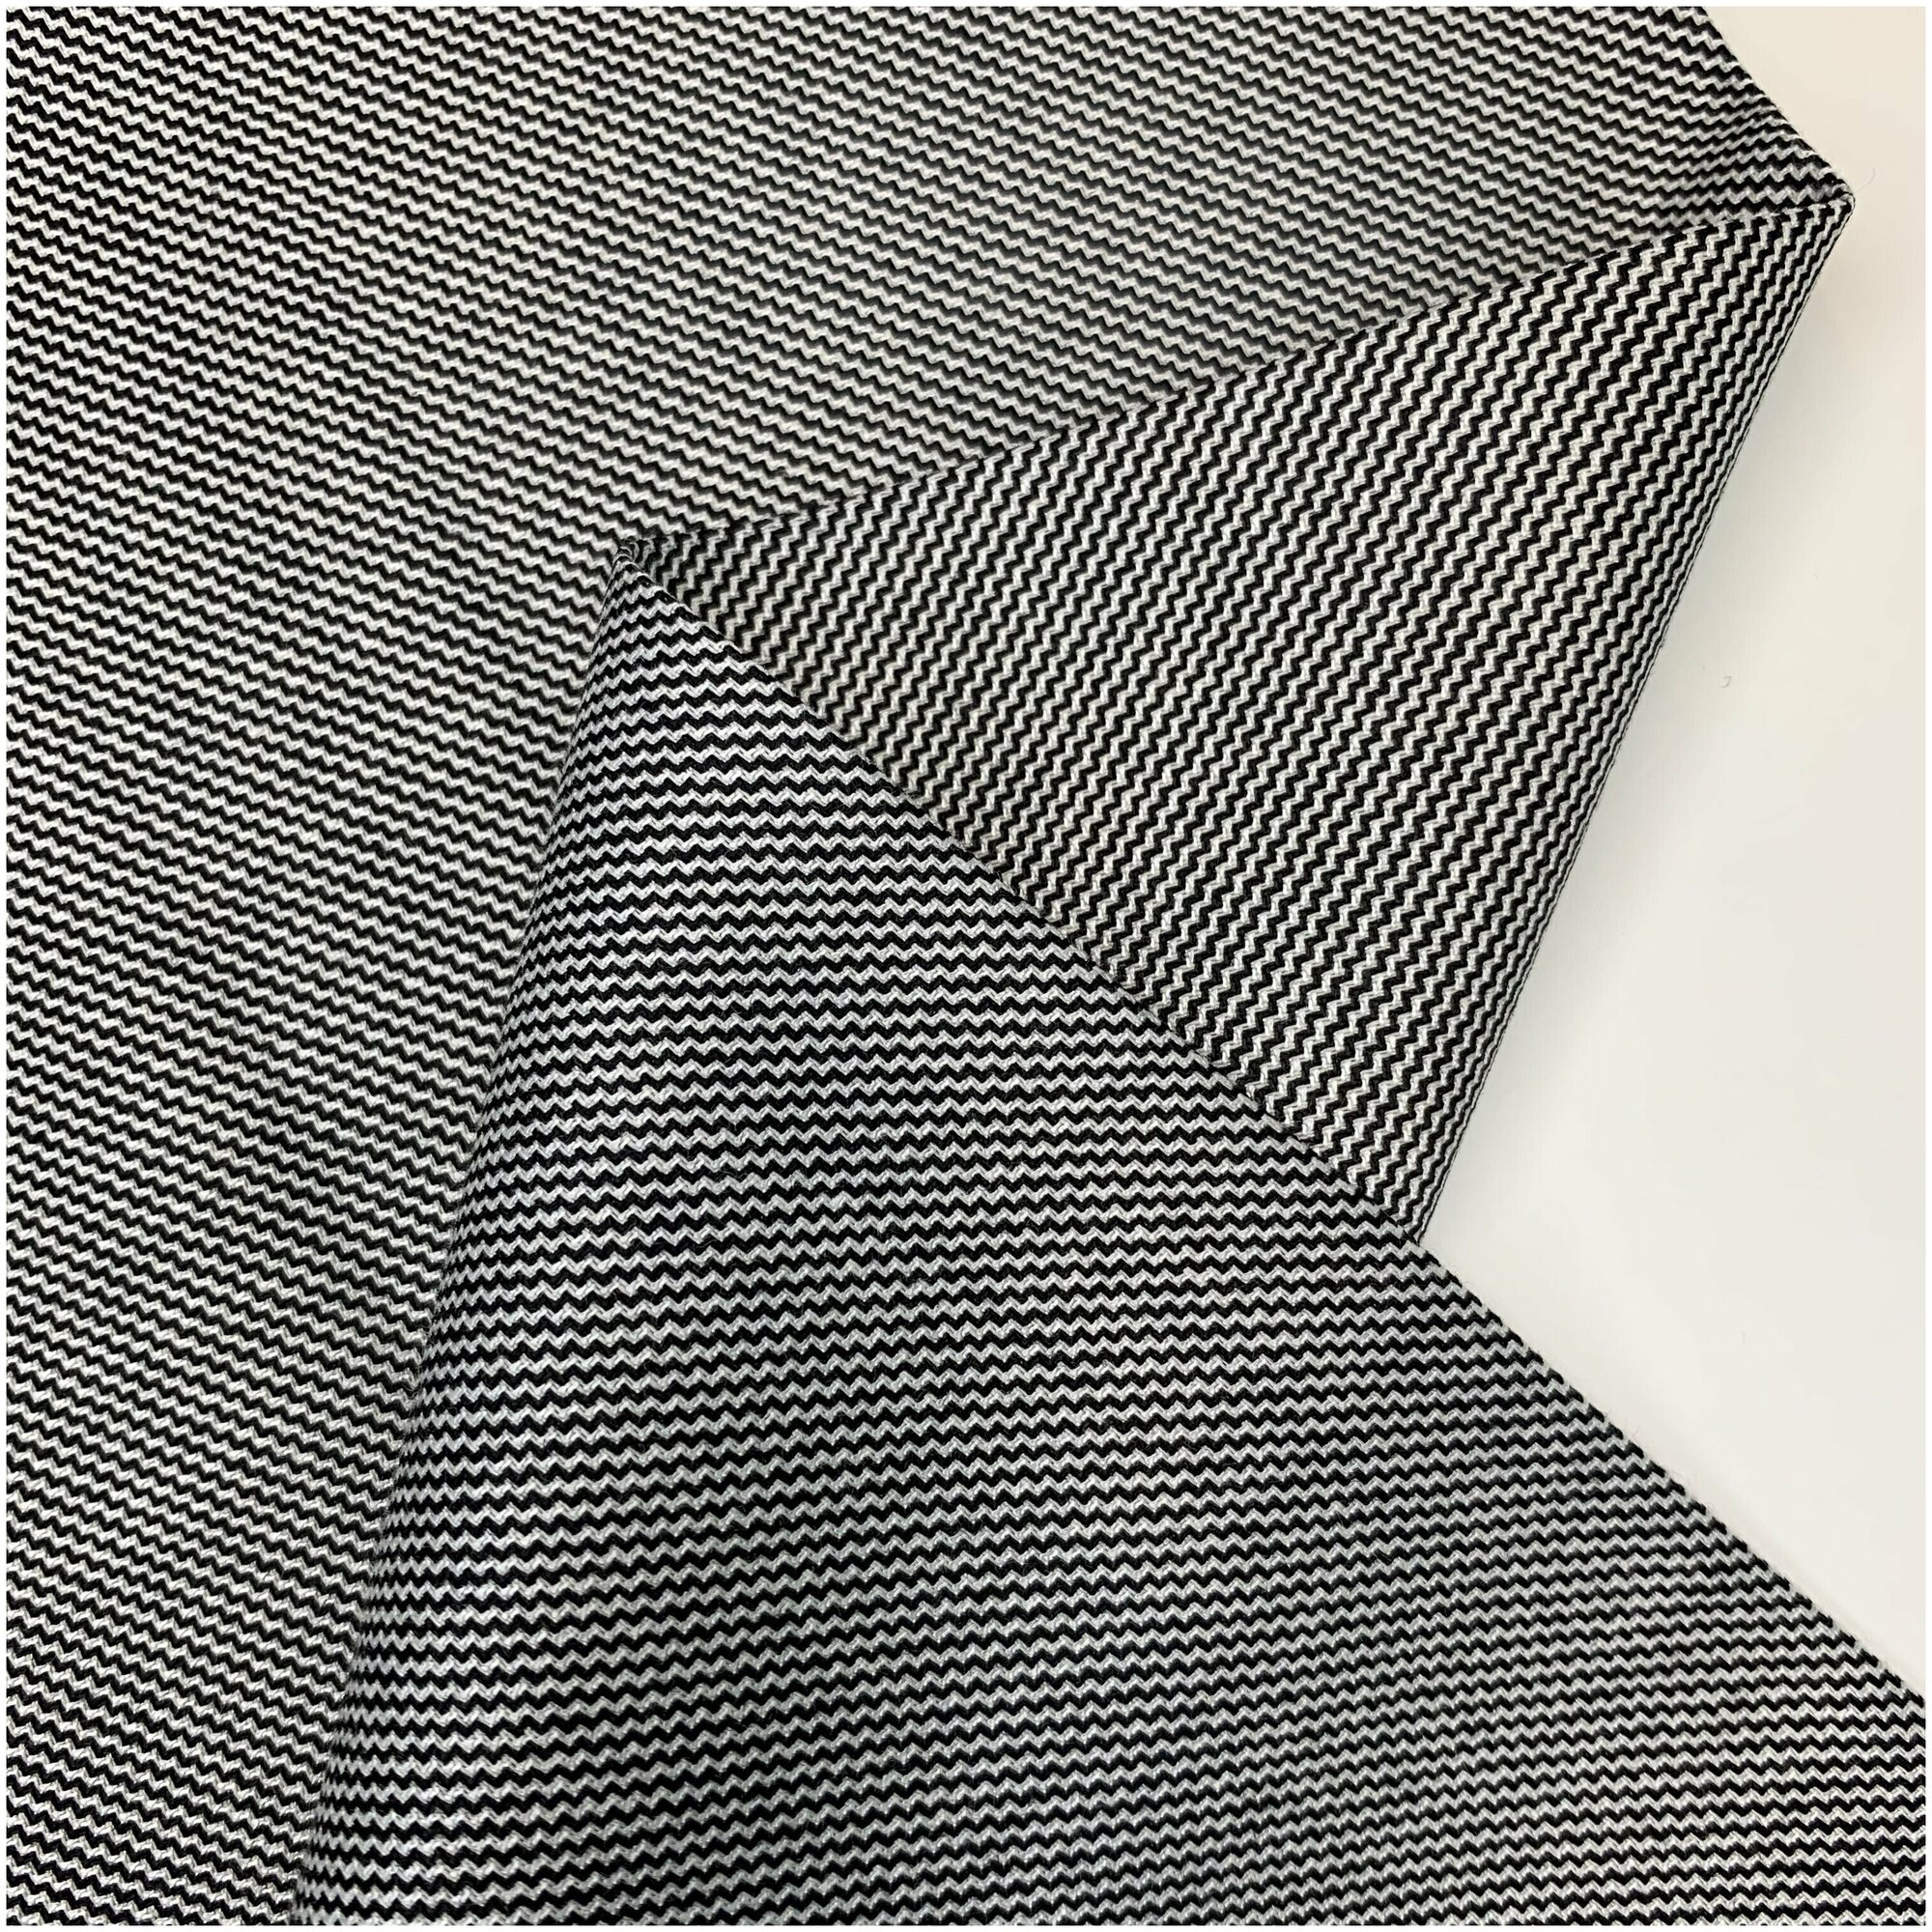 Ткань костюмная bibliotex. Серого цвета. Черно-белая диагональ. Шерсть/эластан. Италия. 0,5 м (ширина 140 см)